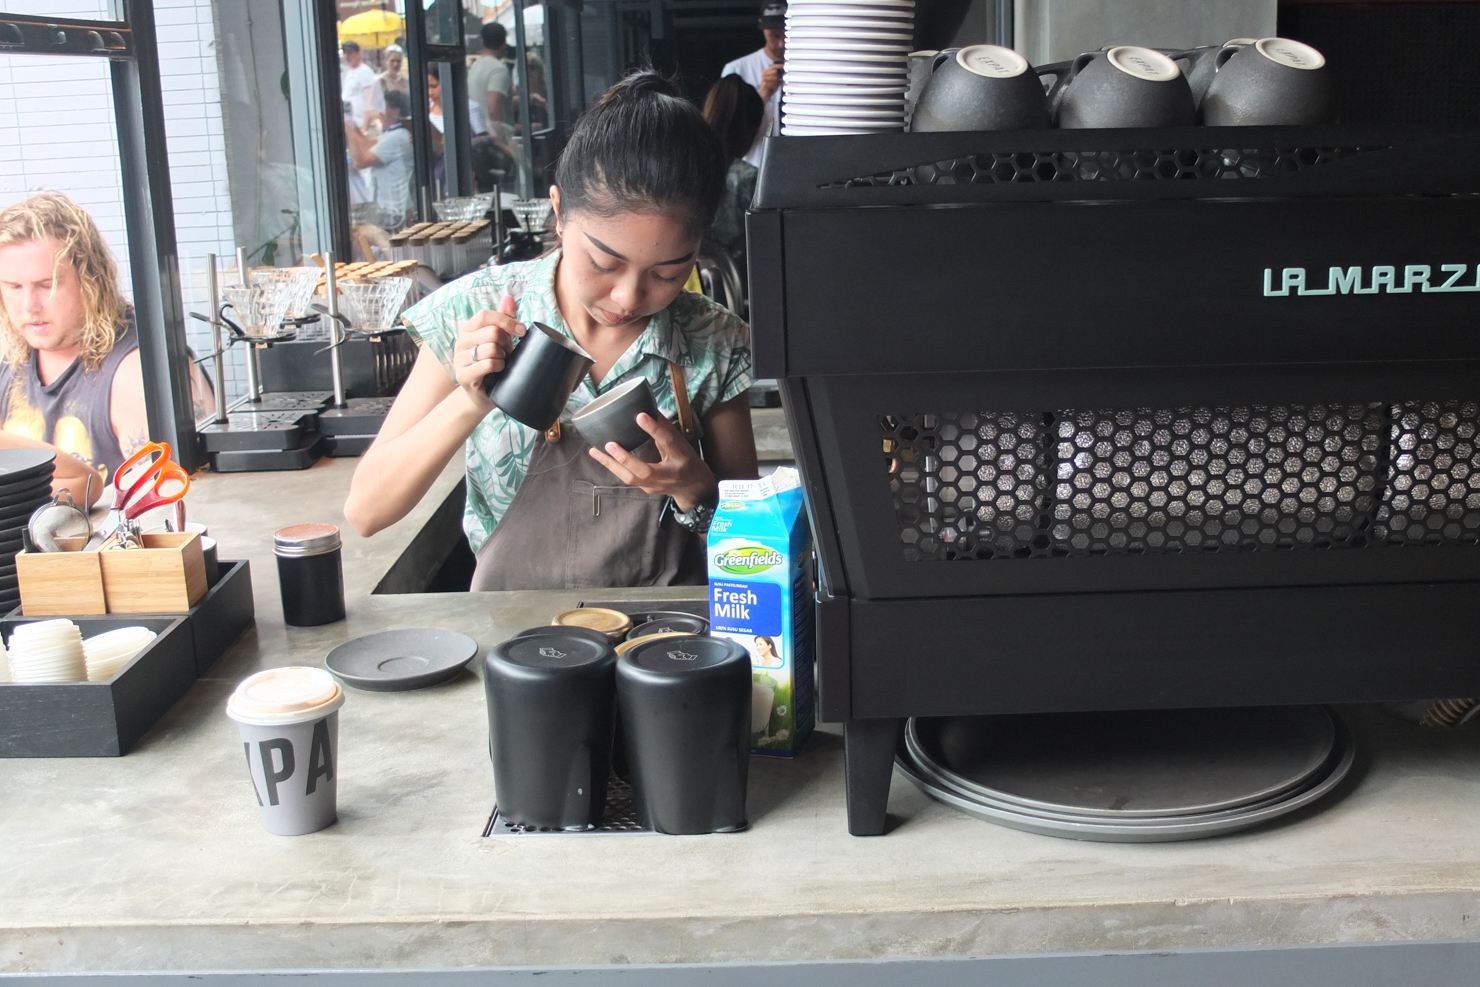 ekspatriat pemanggang l/s studio kopi sensa koffie burung lapar pemanggang kopi senman kopi bali indonesia cafe guide sprudge